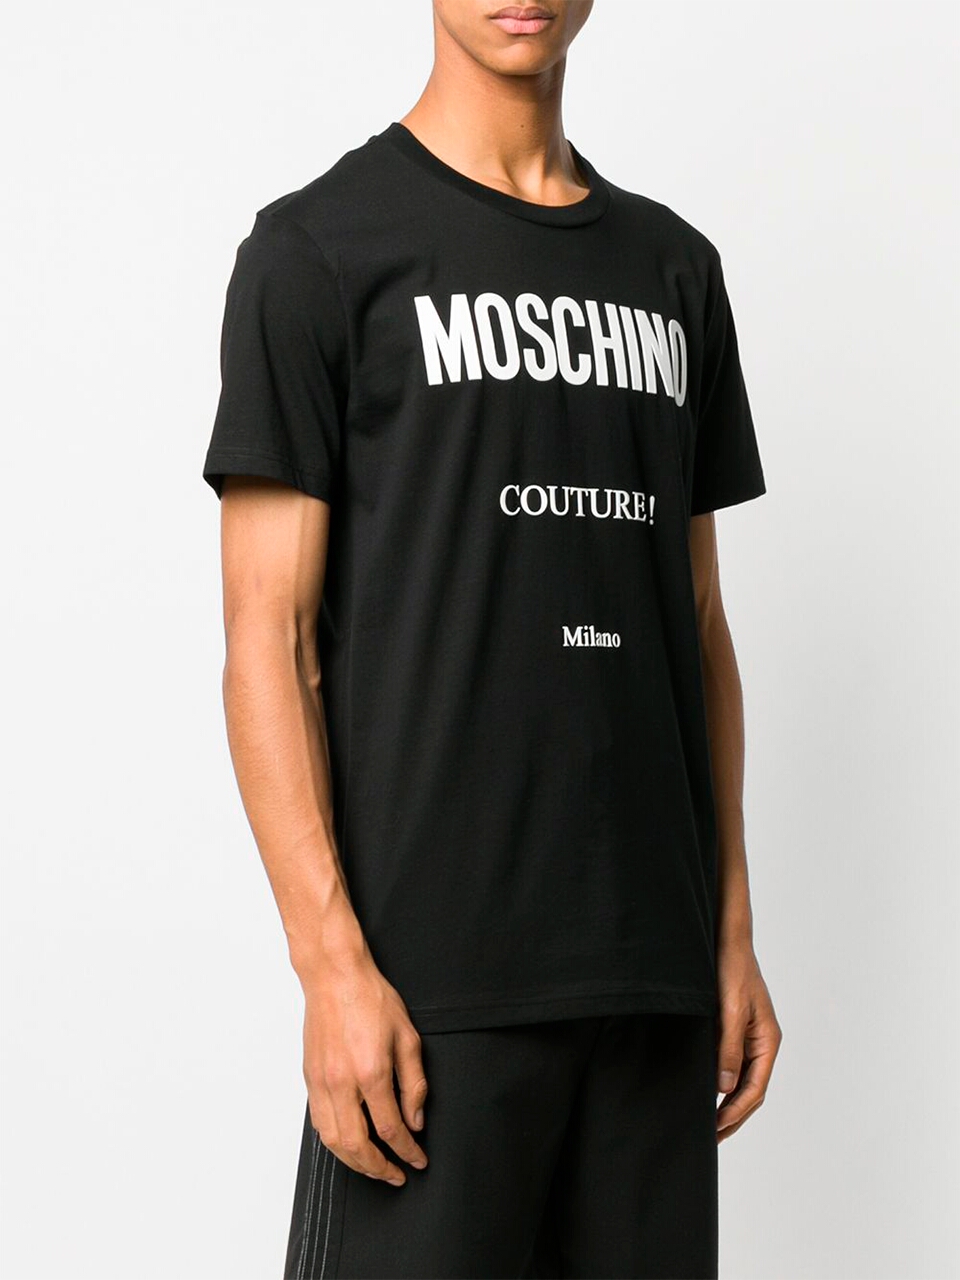 Imagem de: Camiseta Moschino Preta com Logo Couture Branco